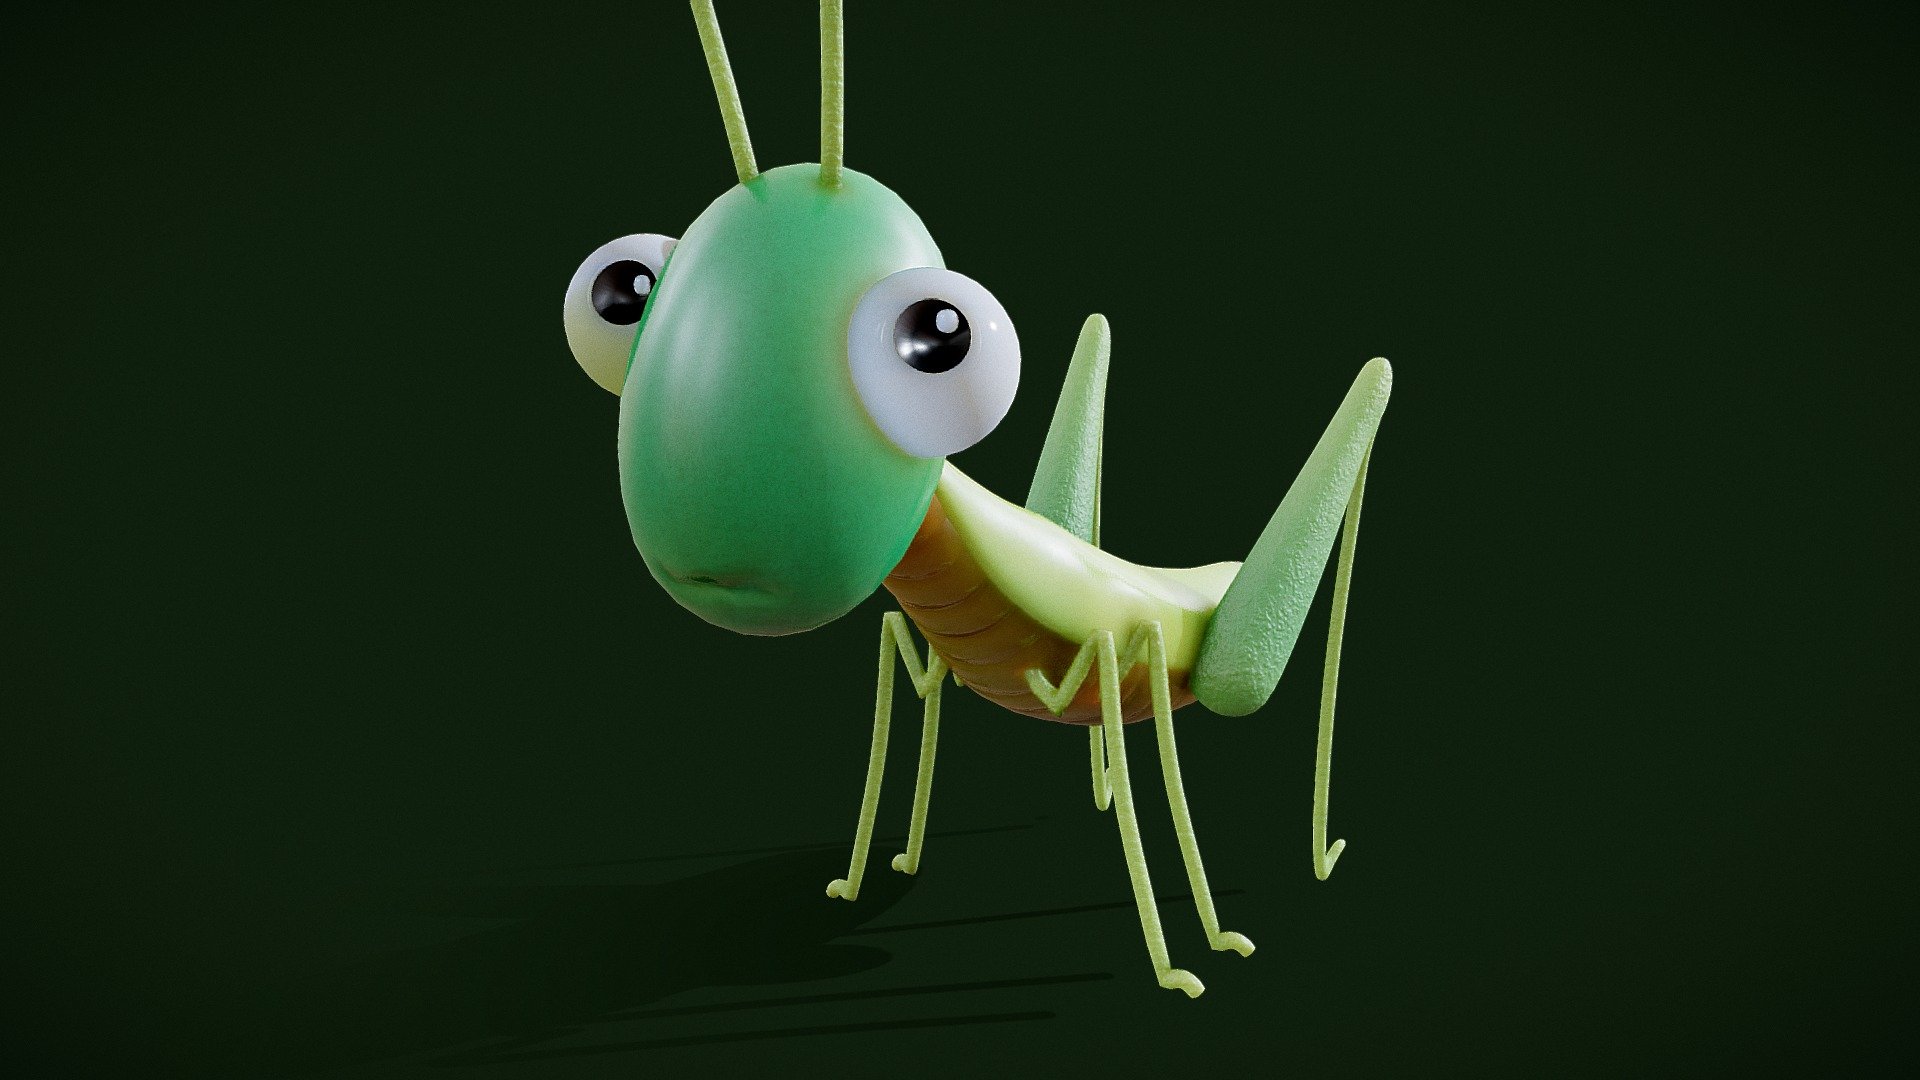 Grasshopper Toon

4k Textures
 - Grasshopper Toon - Buy Royalty Free 3D model by msanjurj 3d model